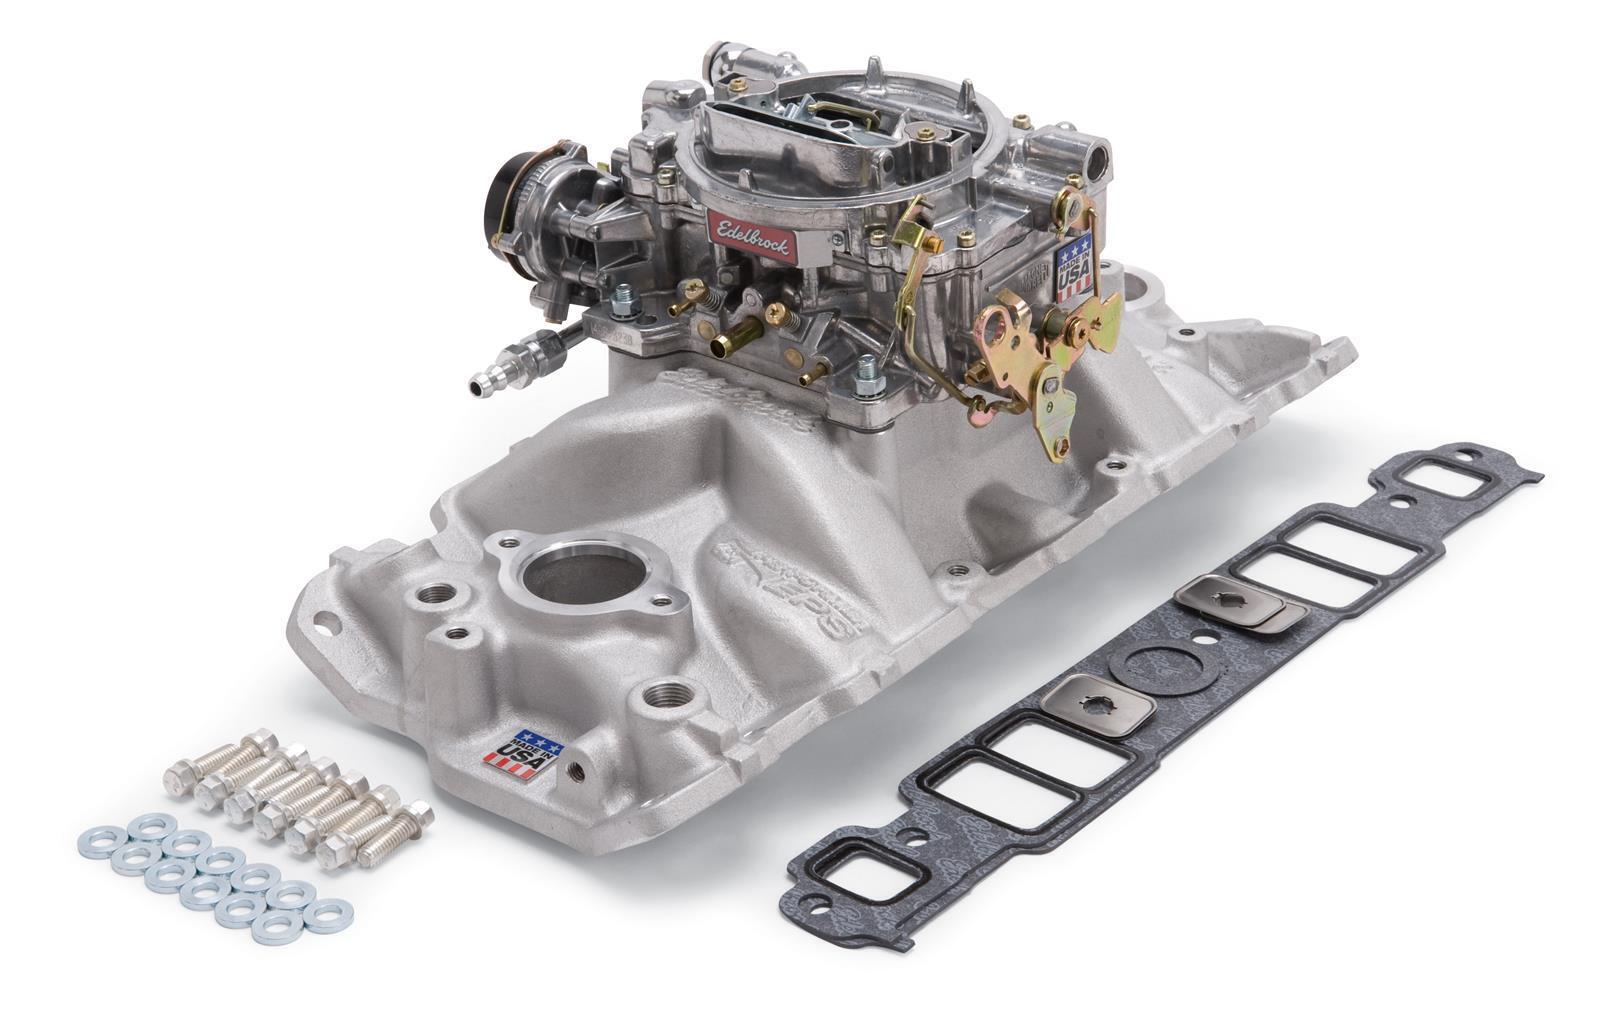 Edelbrock 2021 Performer EPS Intake Manifold and 600cfm Carburetor Kit